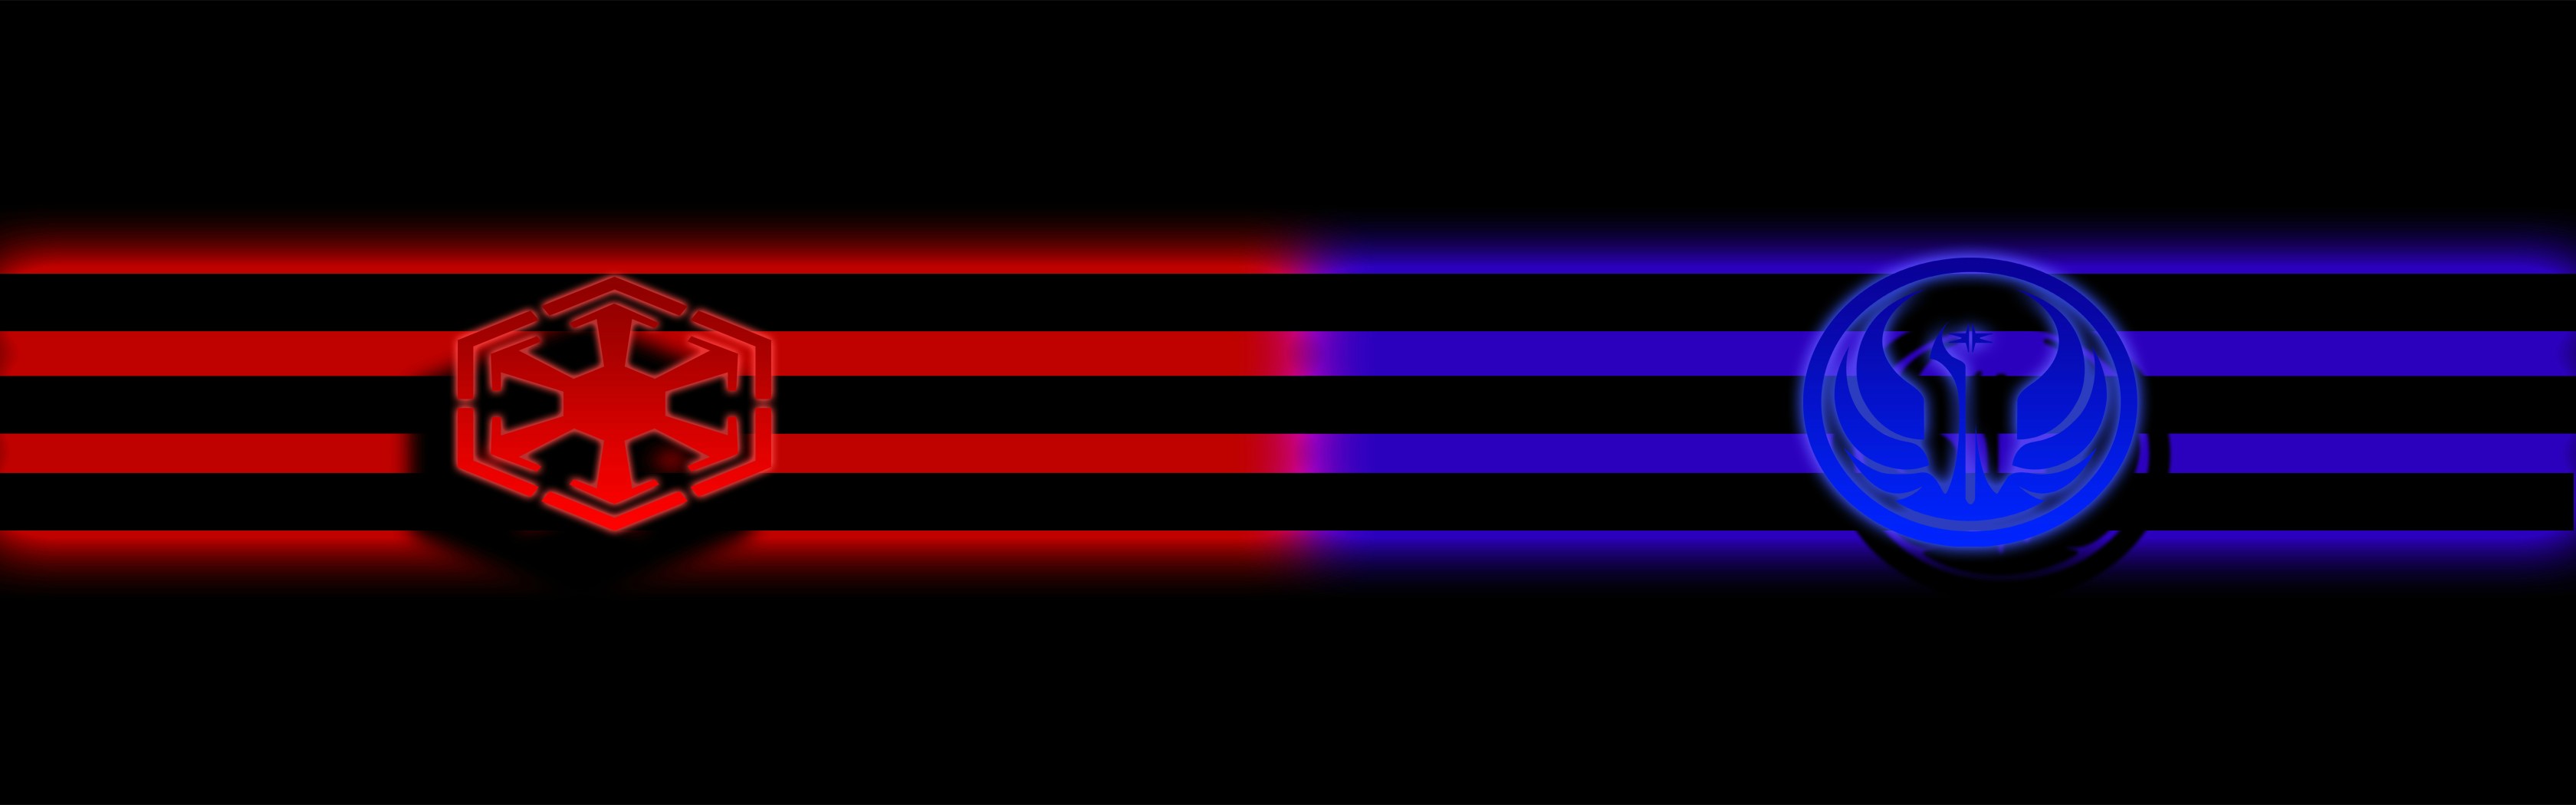 guerre stellari sfondo per monitor doppio,leggero,blu elettrico,neon,viola,illuminazione ad effetto visivo